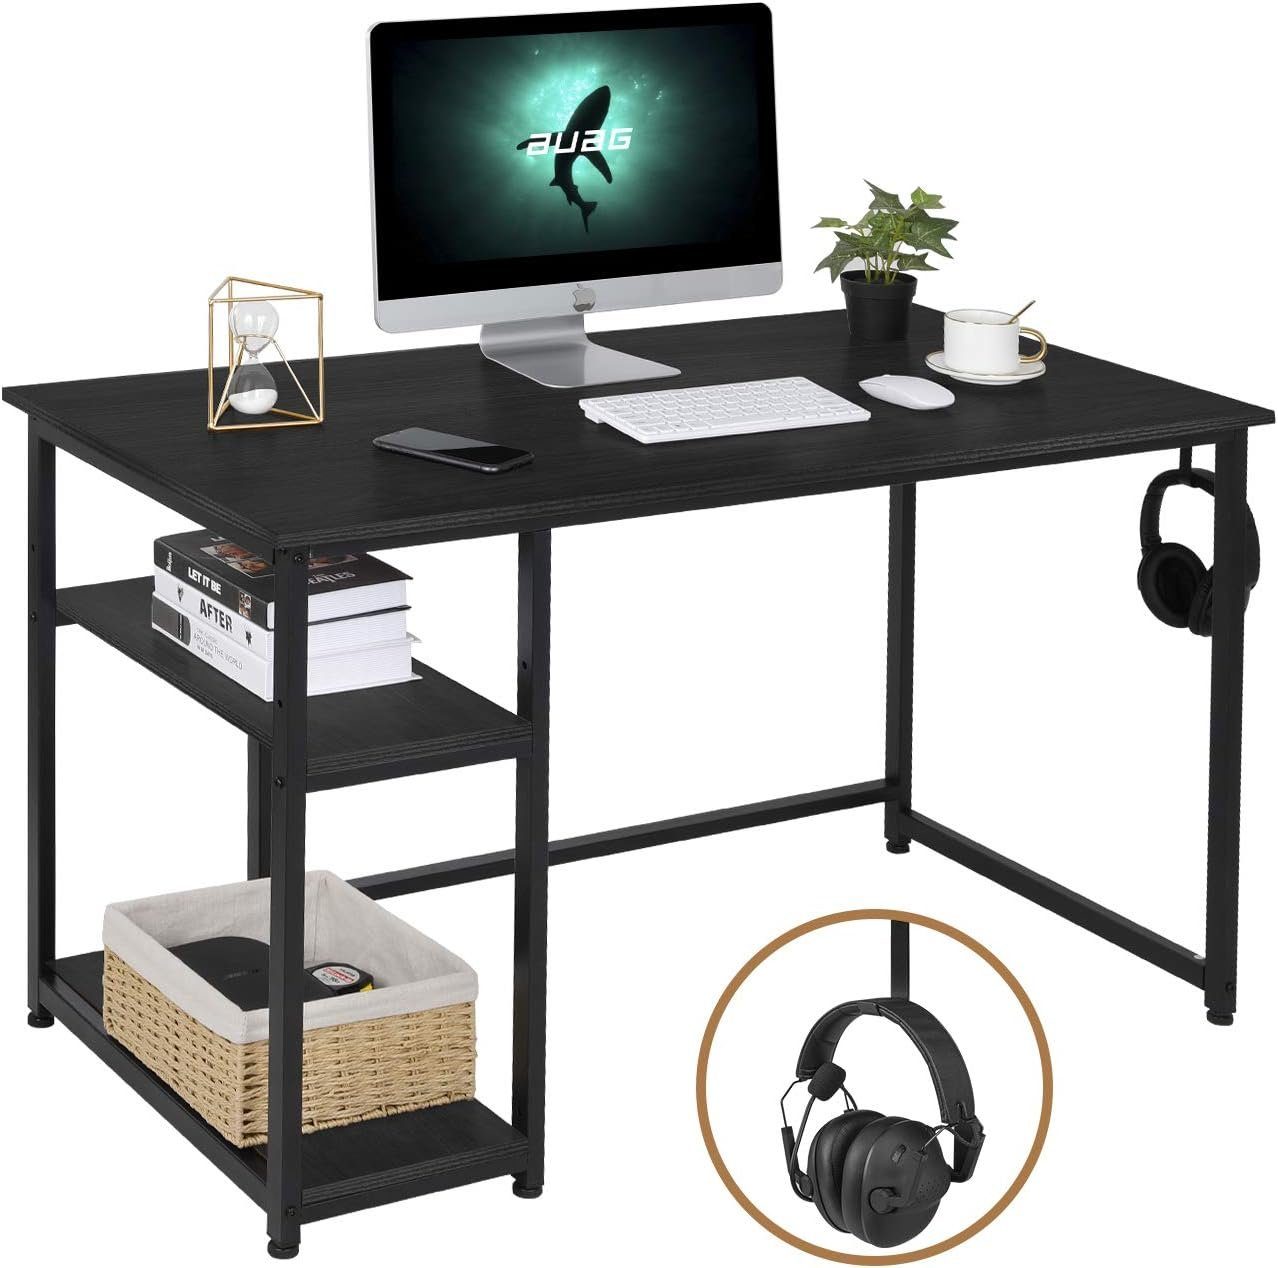 TLGREEN Schreibtisch Computertisch mit Regale und Haken Bürotisch Laptop 120x60 cm